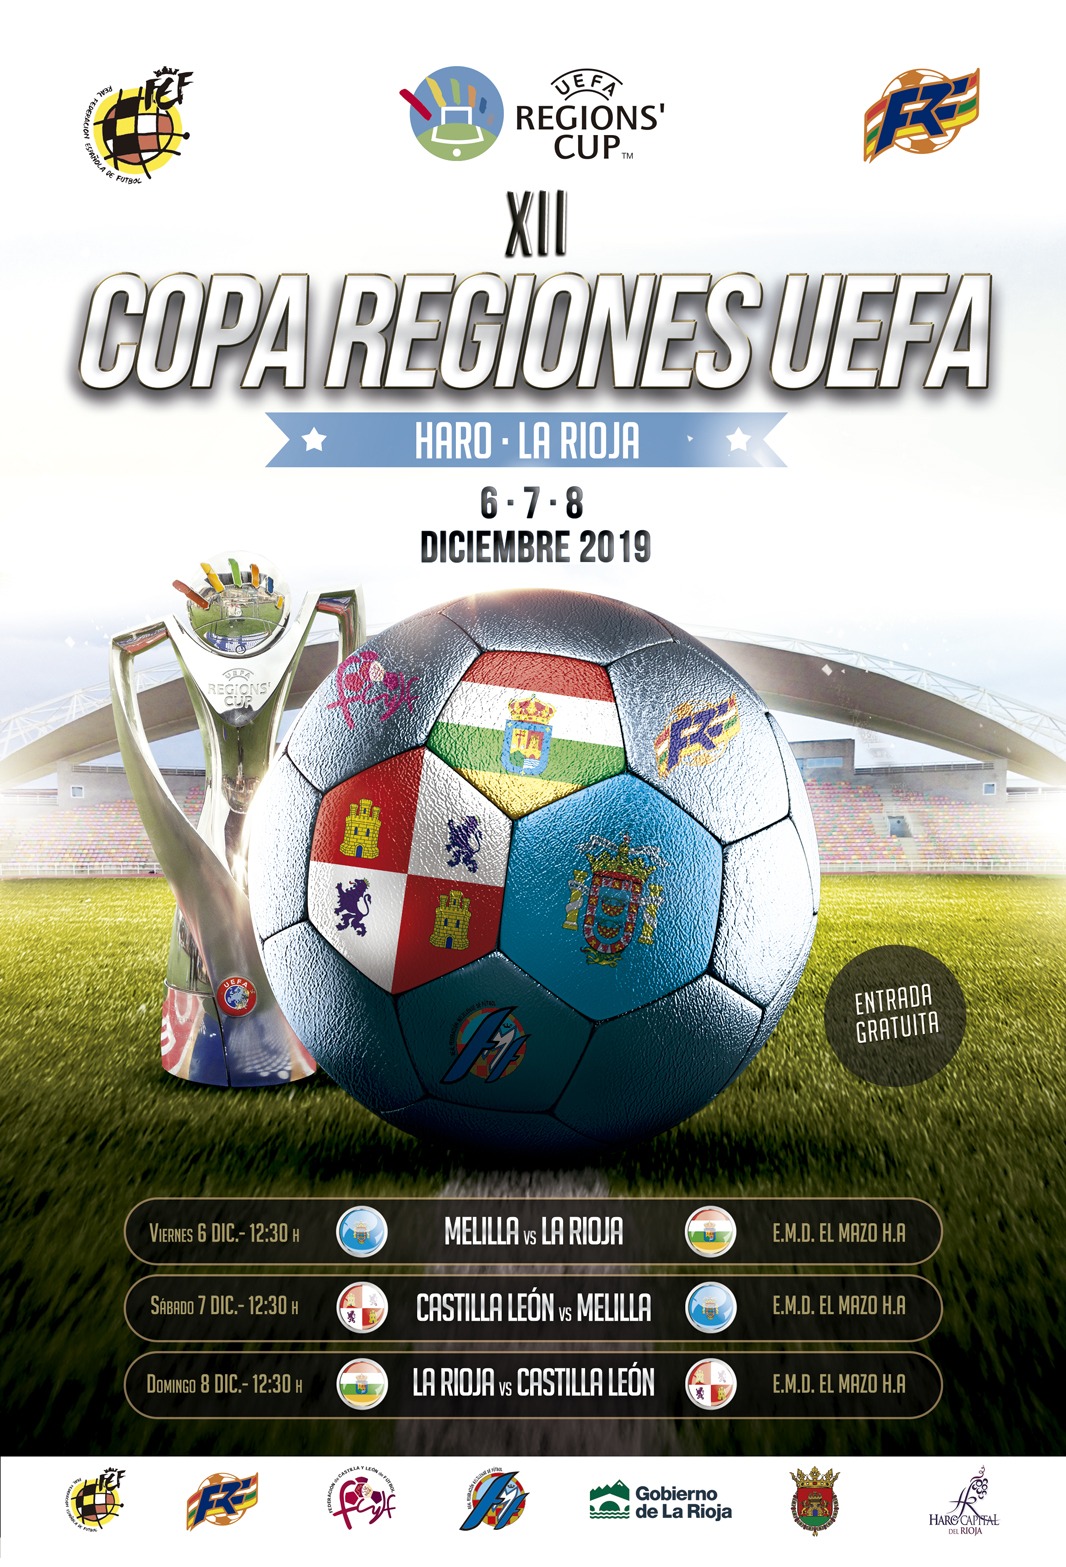 Federación Riojana Fútbol-Mañana en El Mazo (12:30 h. frente a Melilla) la 'Riojana' vuelve a la Copa de las Regiones de UEFA.